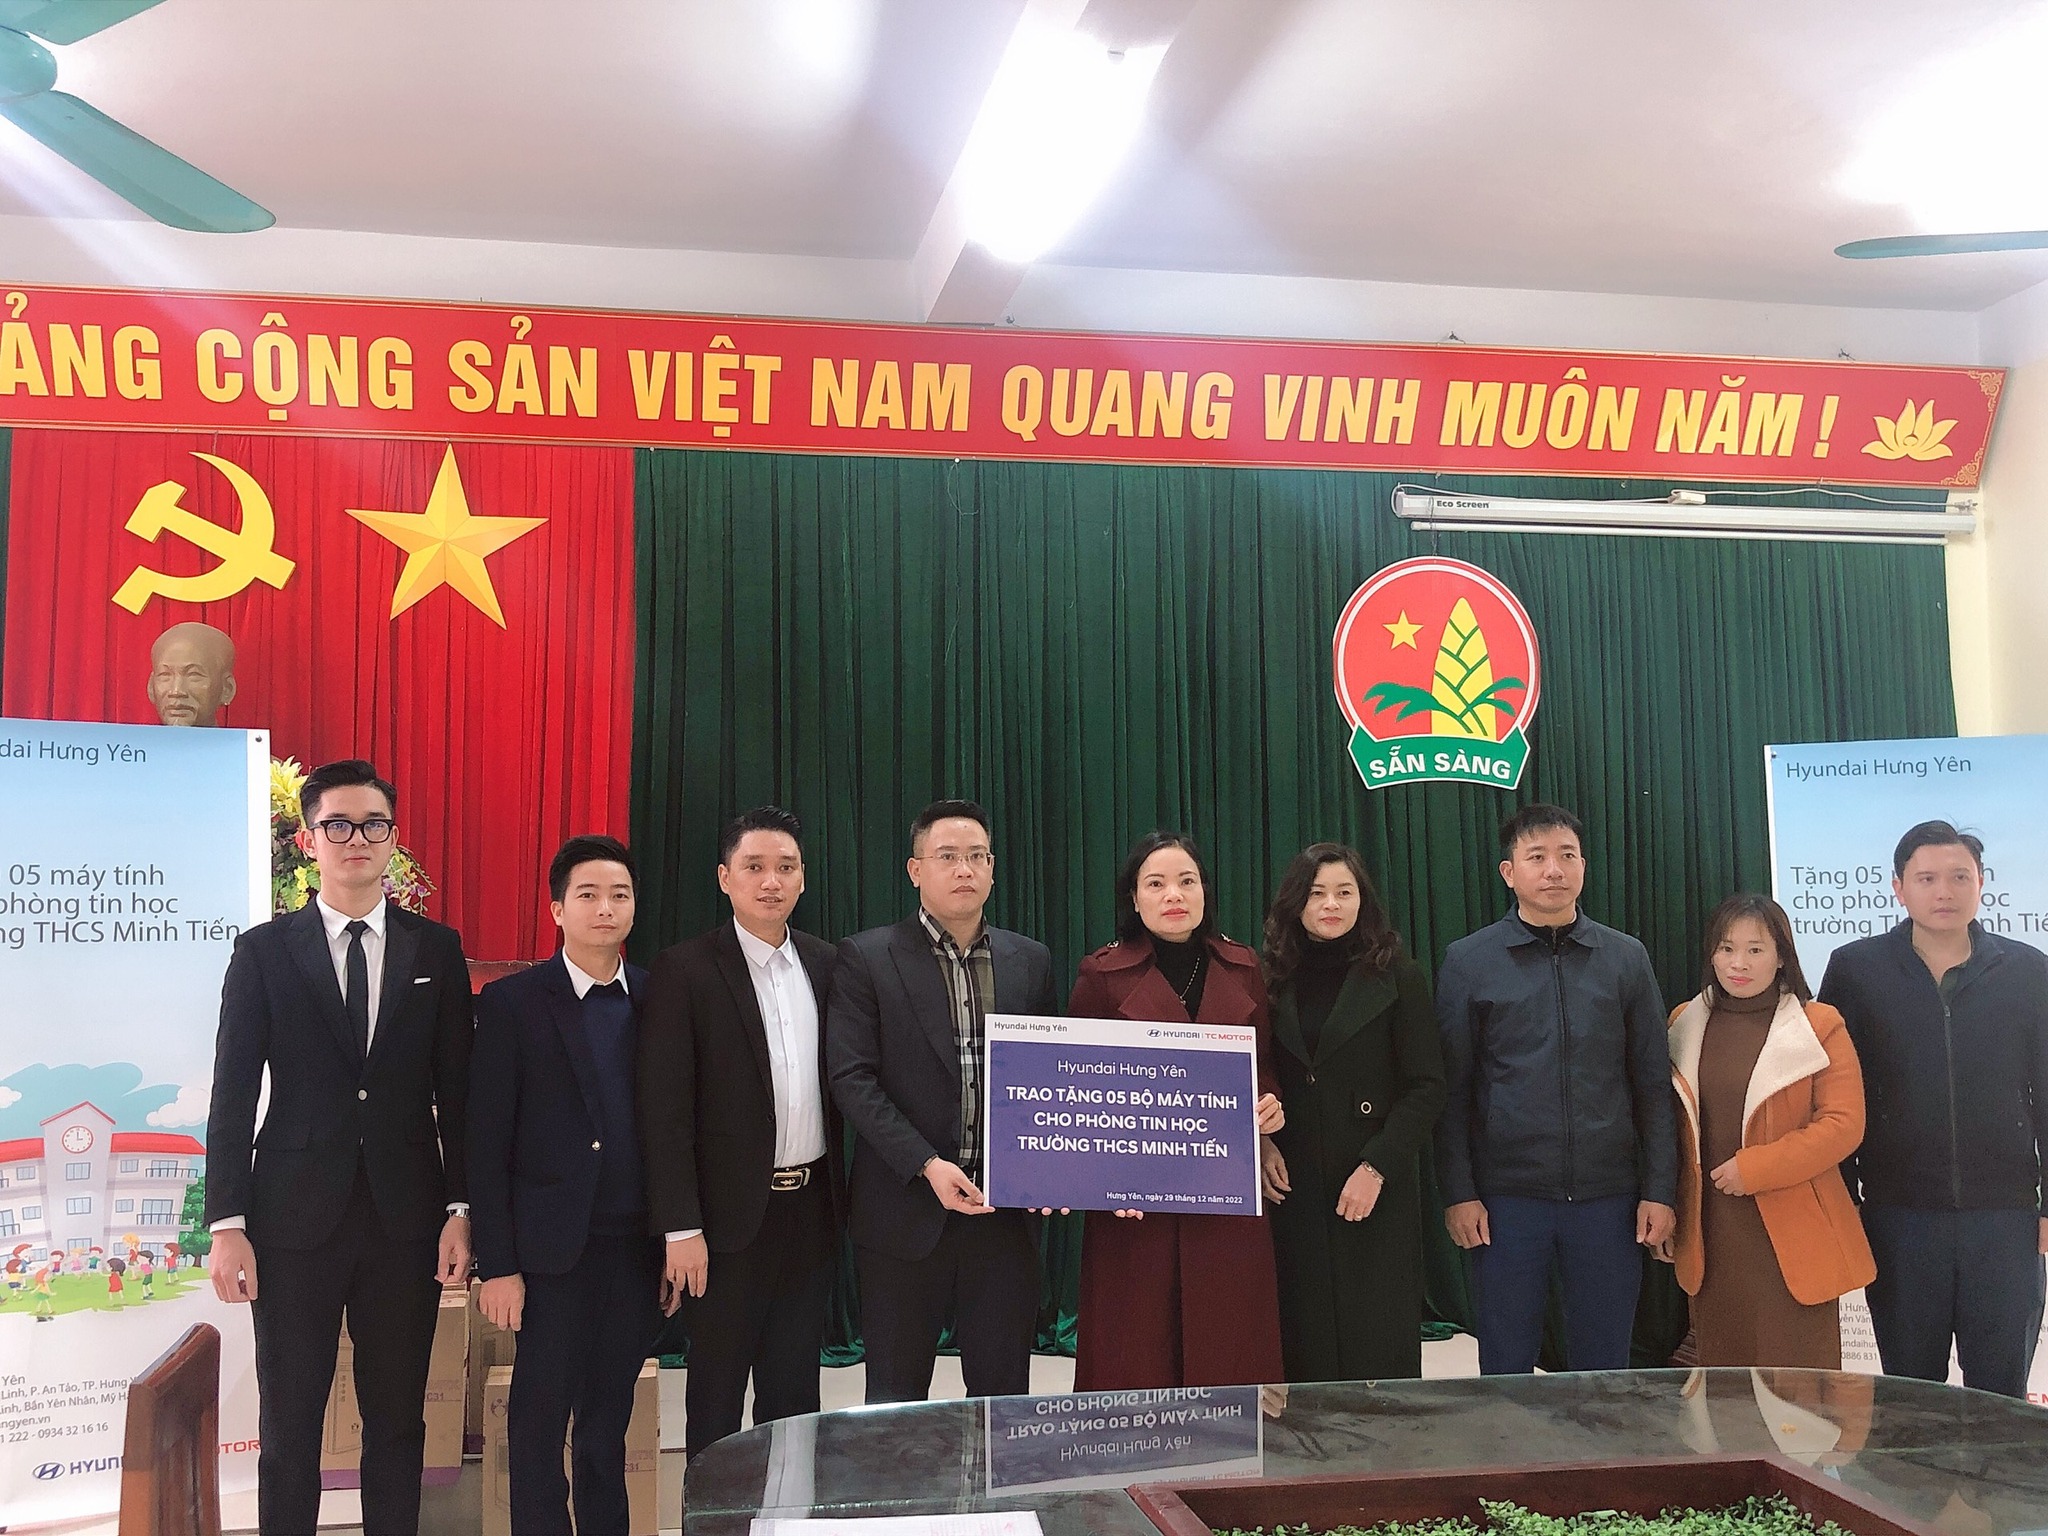 Hyundai Hưng Yên trao tặng máy tính cho trường THCS Minh Tiến